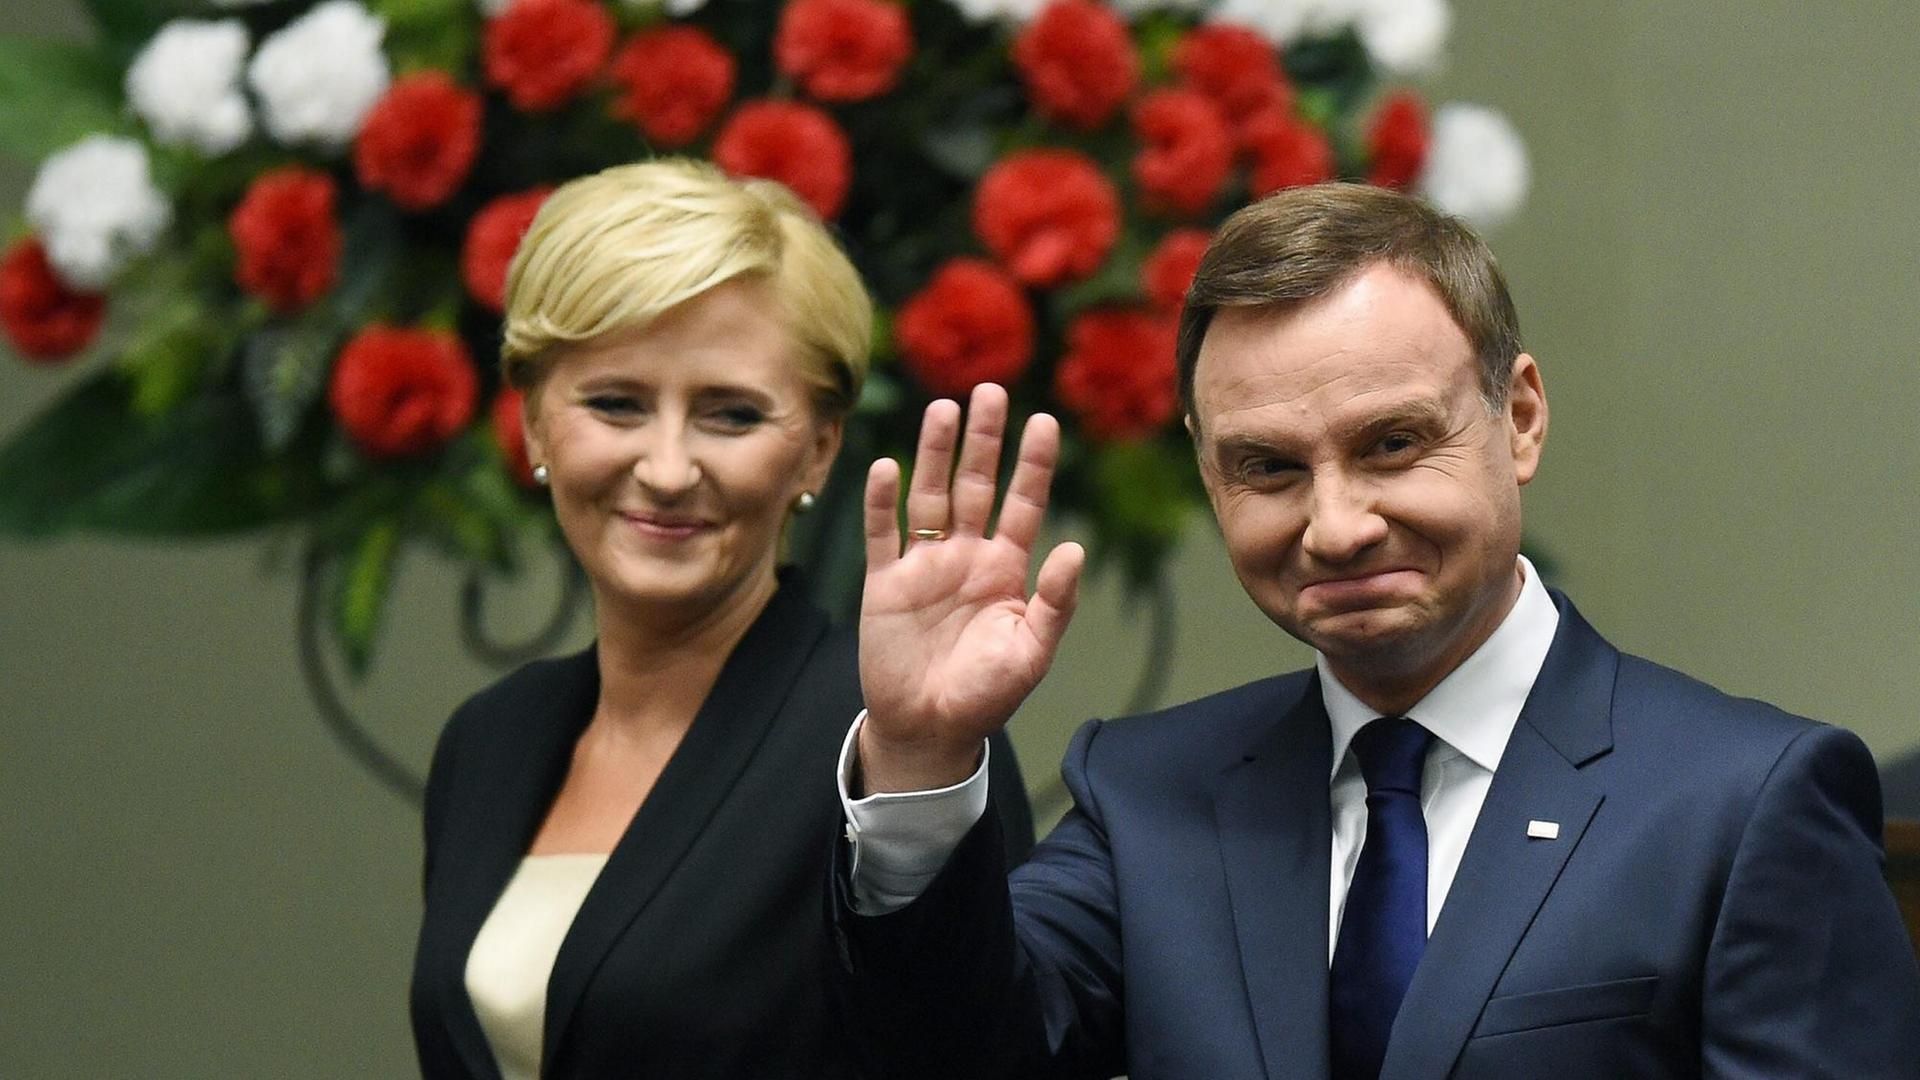 Polens Präsident Andrzej Duda winkt bei seinem Amtsantritt in Warschau in die Kameras. Der Präsident hat kurze braune Haare und trägt einen blauen Anzug, ein weißes Hemd und eine dunkle Krawatte. Links neben ihm steht seine Frau Agata Kornhauser-Duda, sie trägt eine blonde Kurzhaarfrisur, einen schwarzen Blazer, darunter ein weißes Oberteil. Im Hintergrund sieht man rot und weiß blühende Blumen.